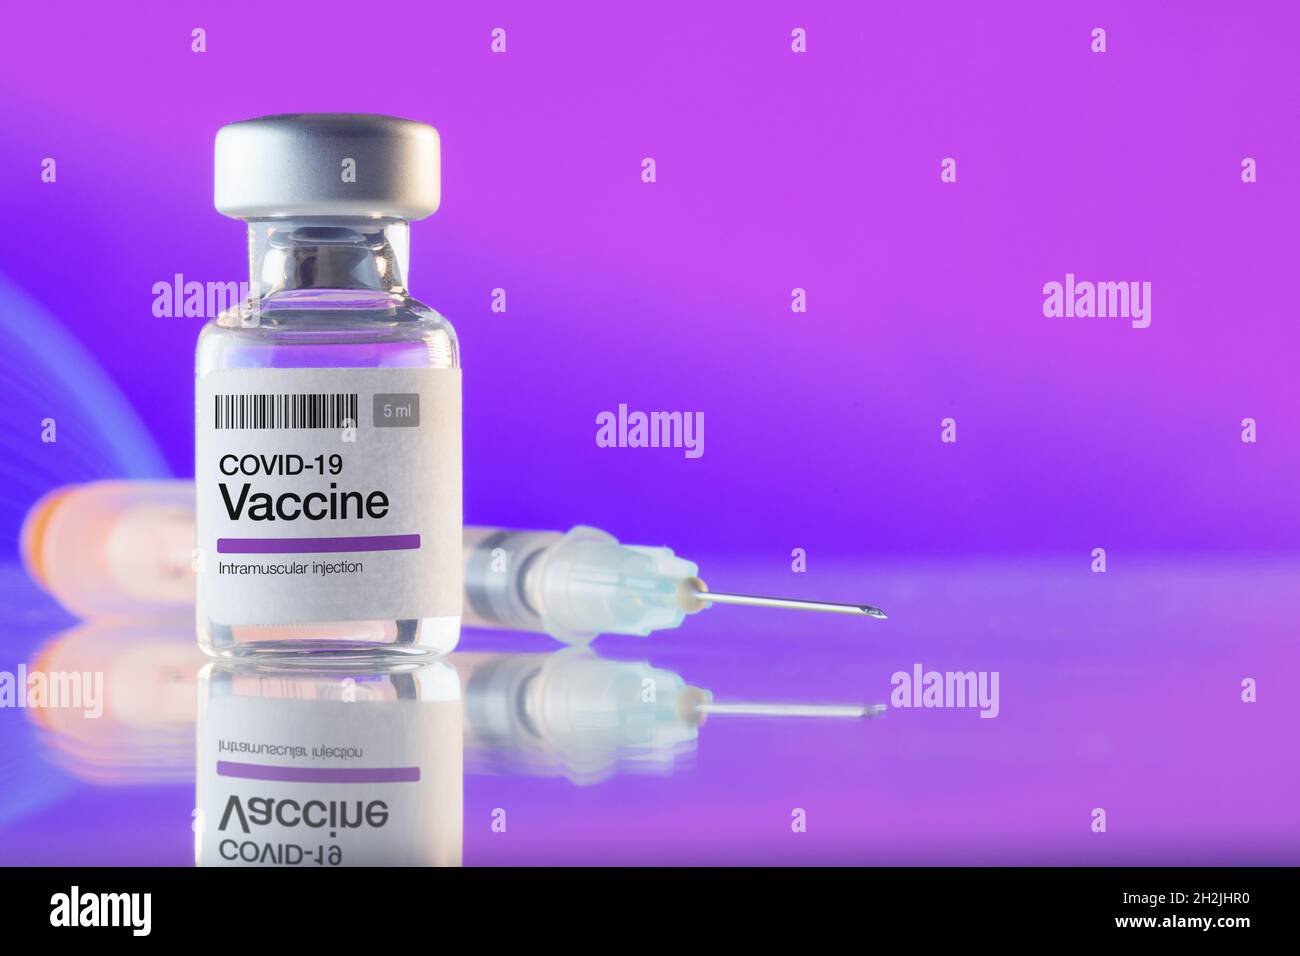 Primo piano di un flaconcino con vaccino e siringa COVID-19 su sfondo viola. Vaccinazioni, Covid-19, industria farmaceutica e concetti di salute Foto Stock